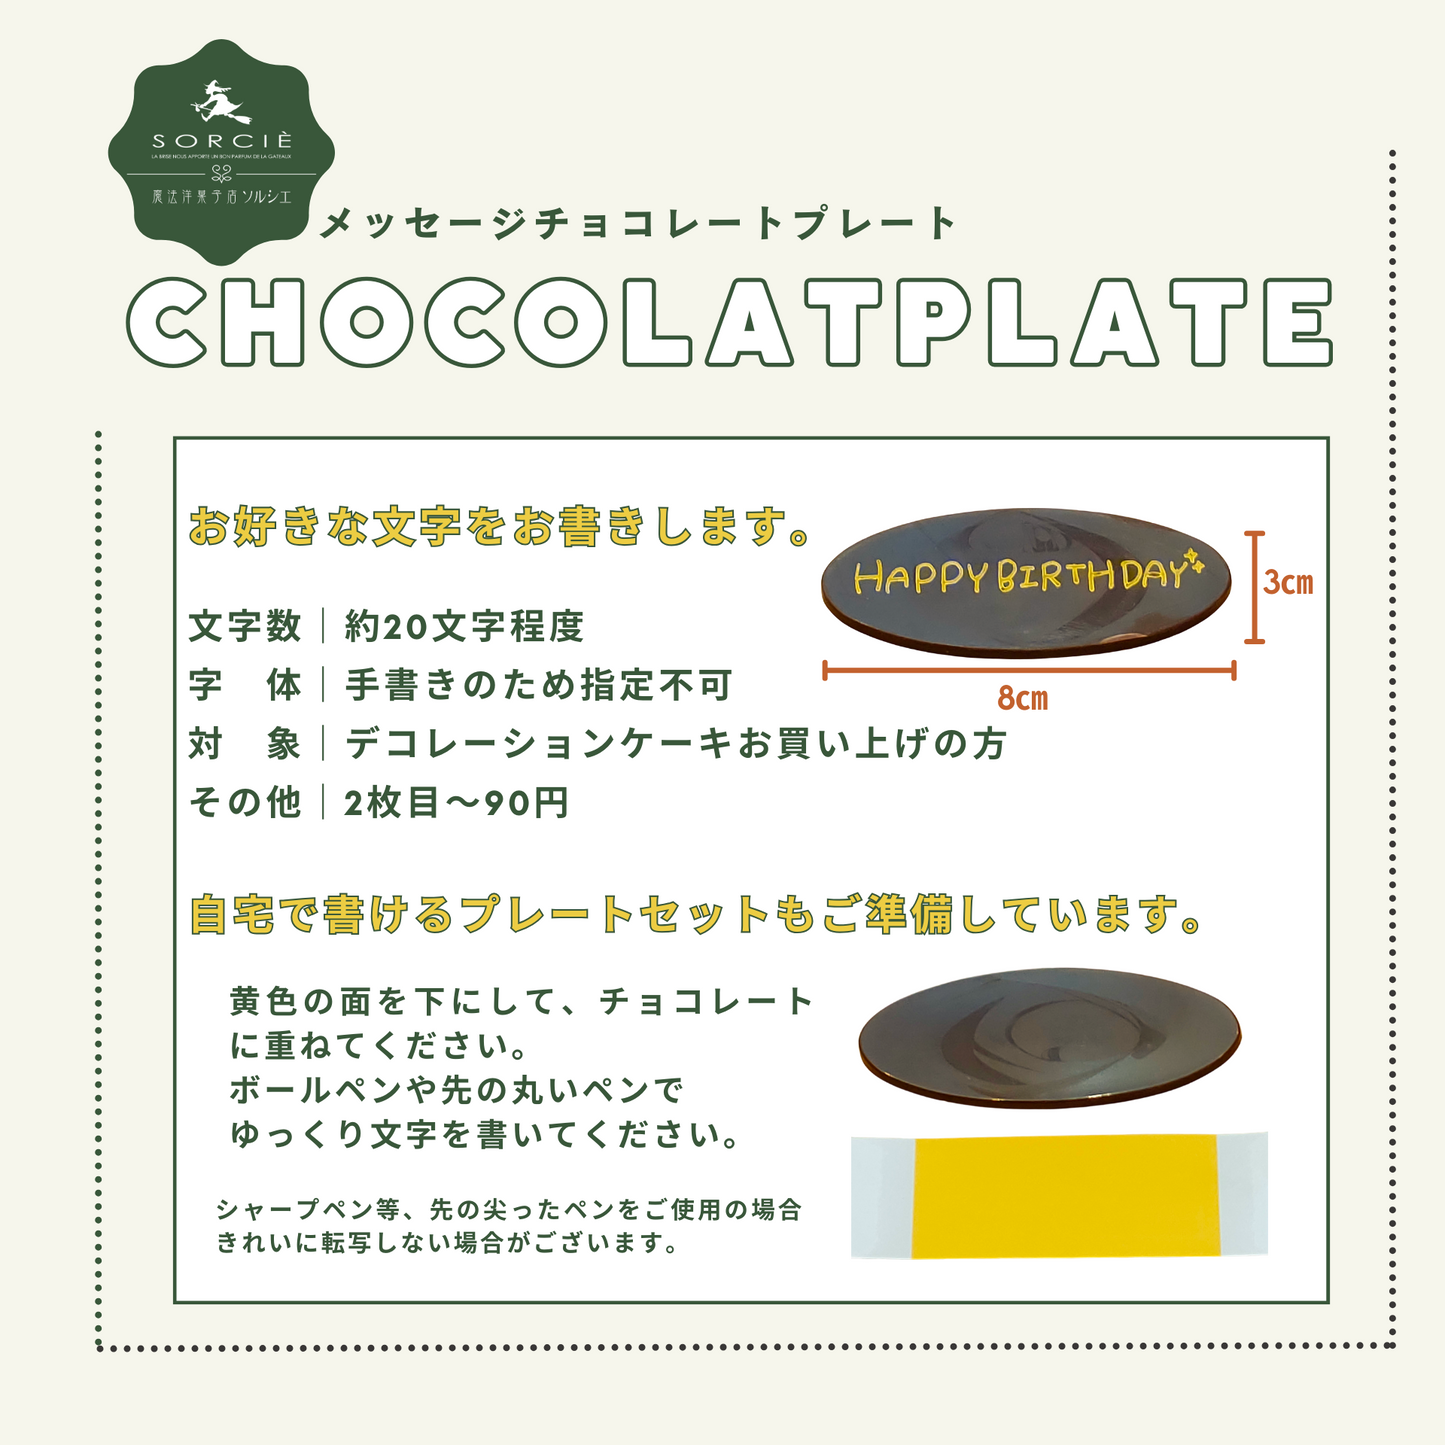 【店舗受取】和栗 モンブラン デコレーションケーキ